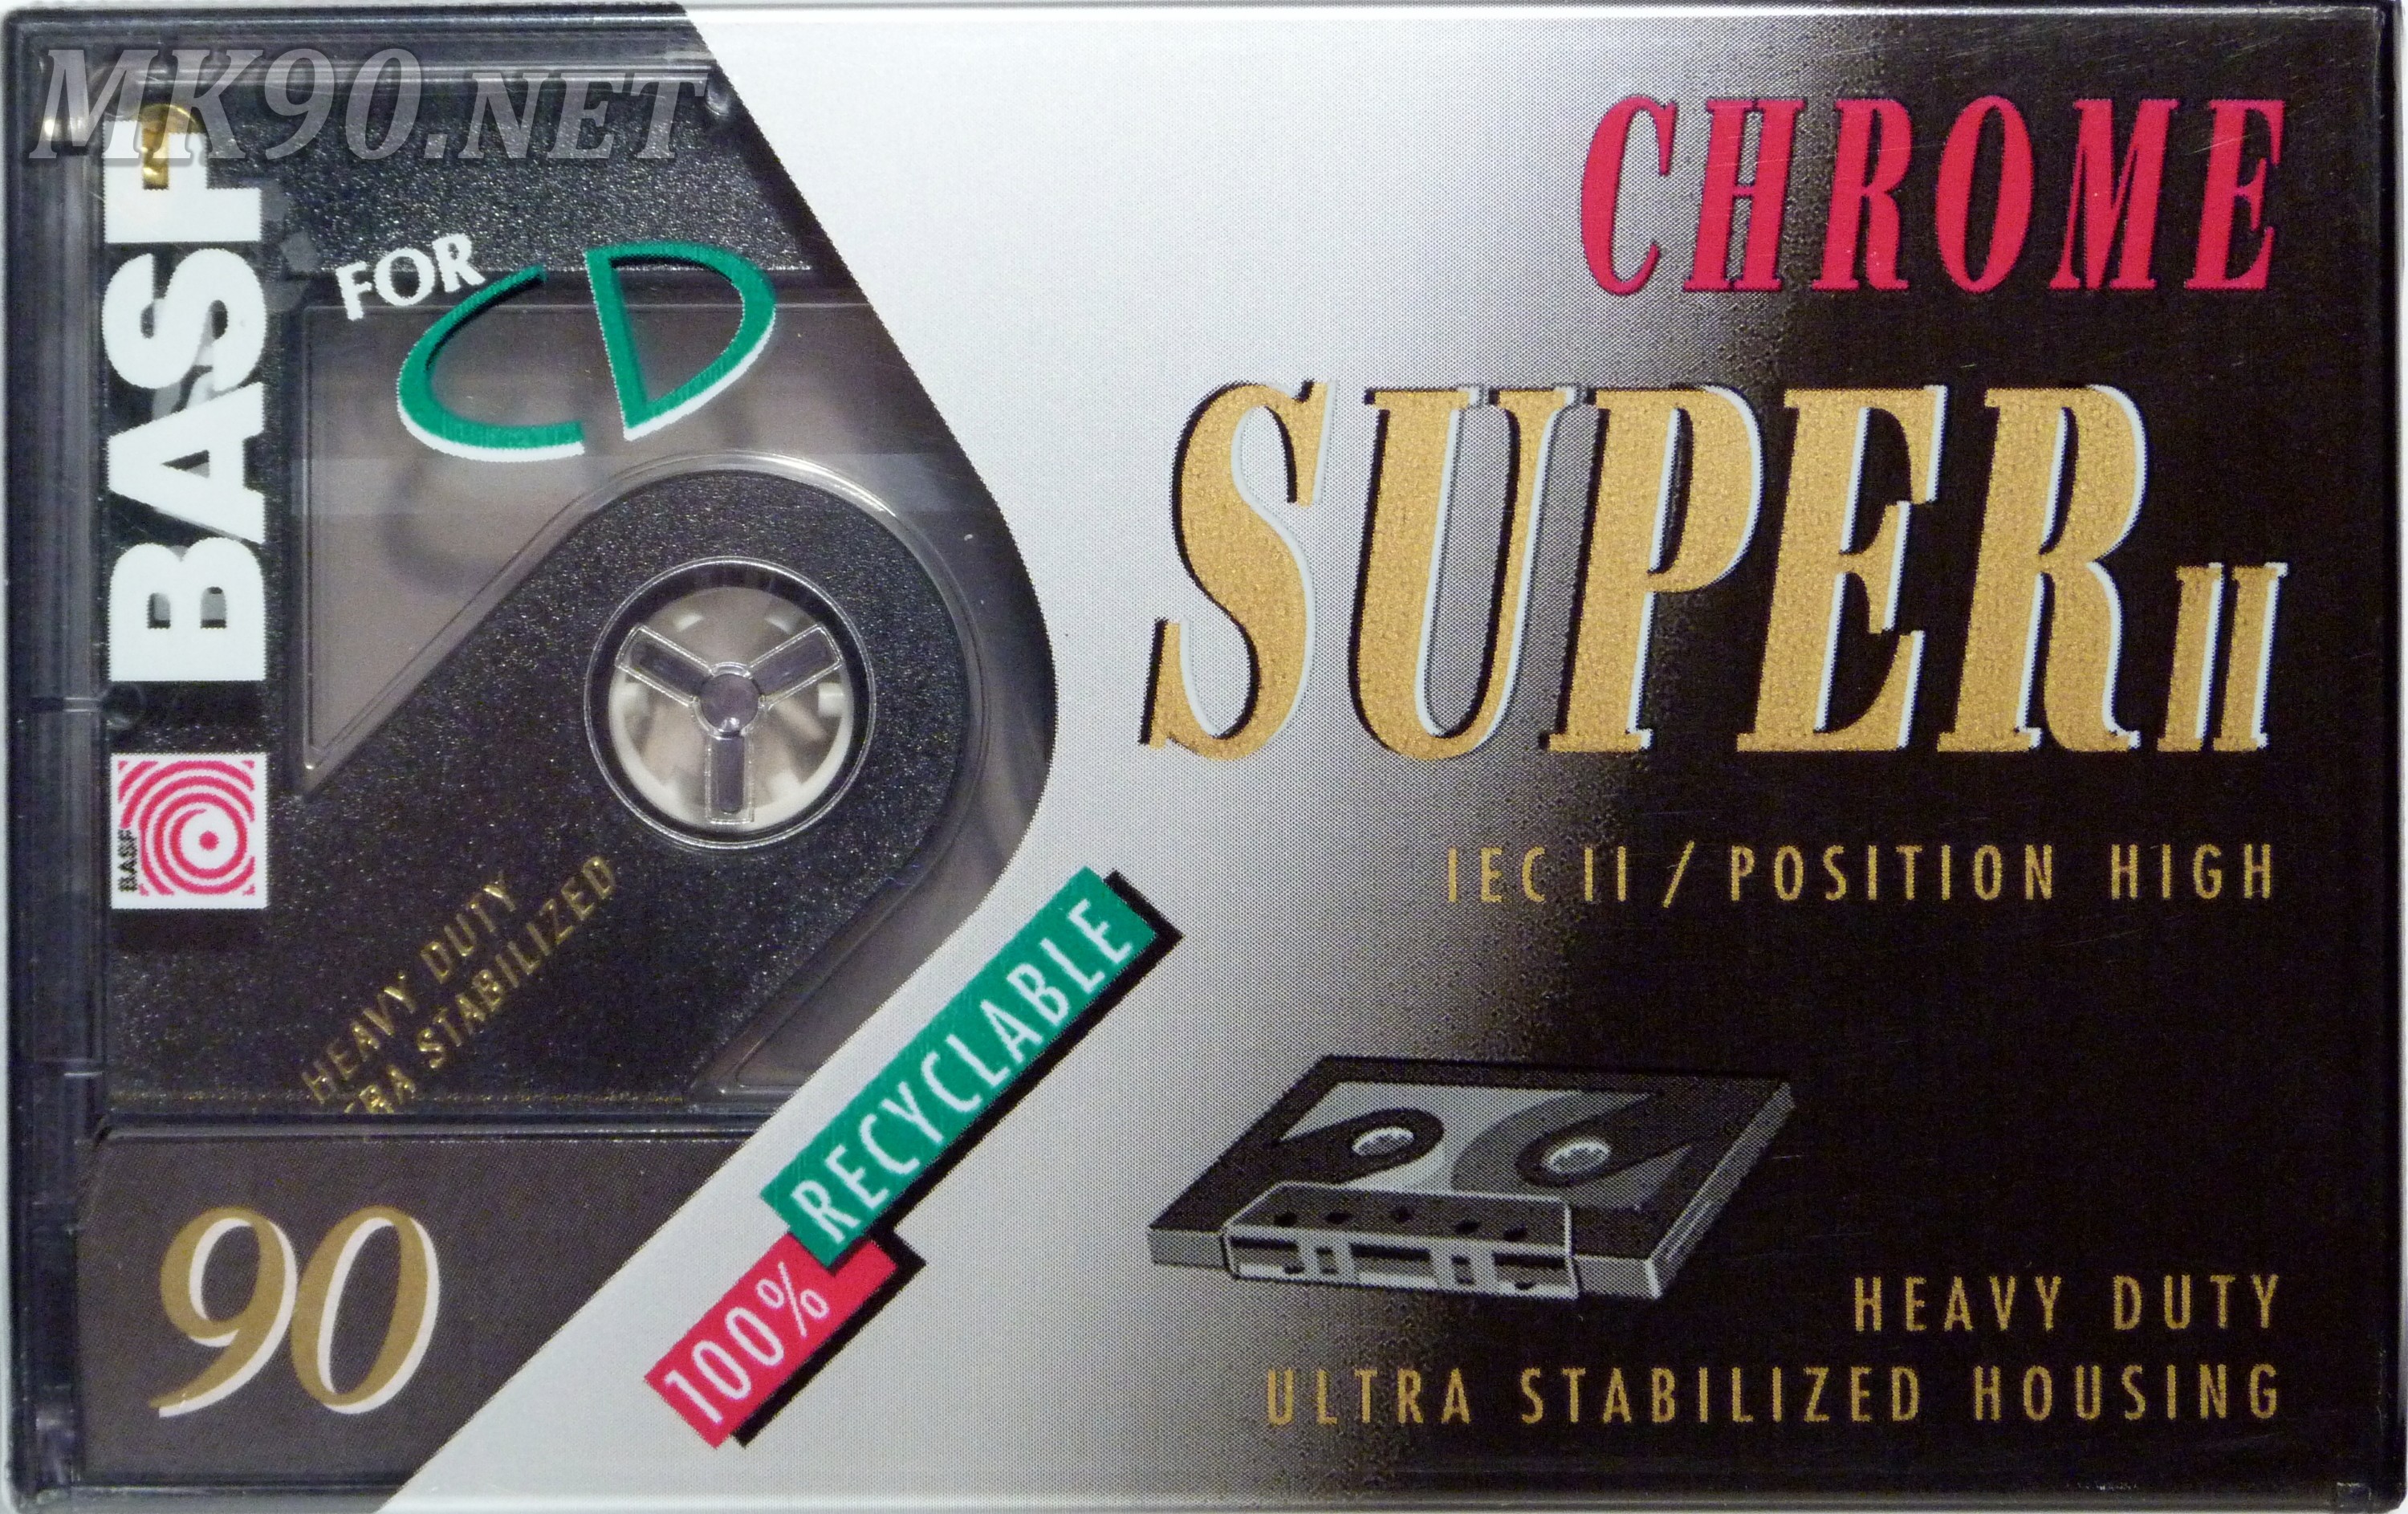 Basf Chrome Super II 90 Eu 1993-94 (ver. 2)